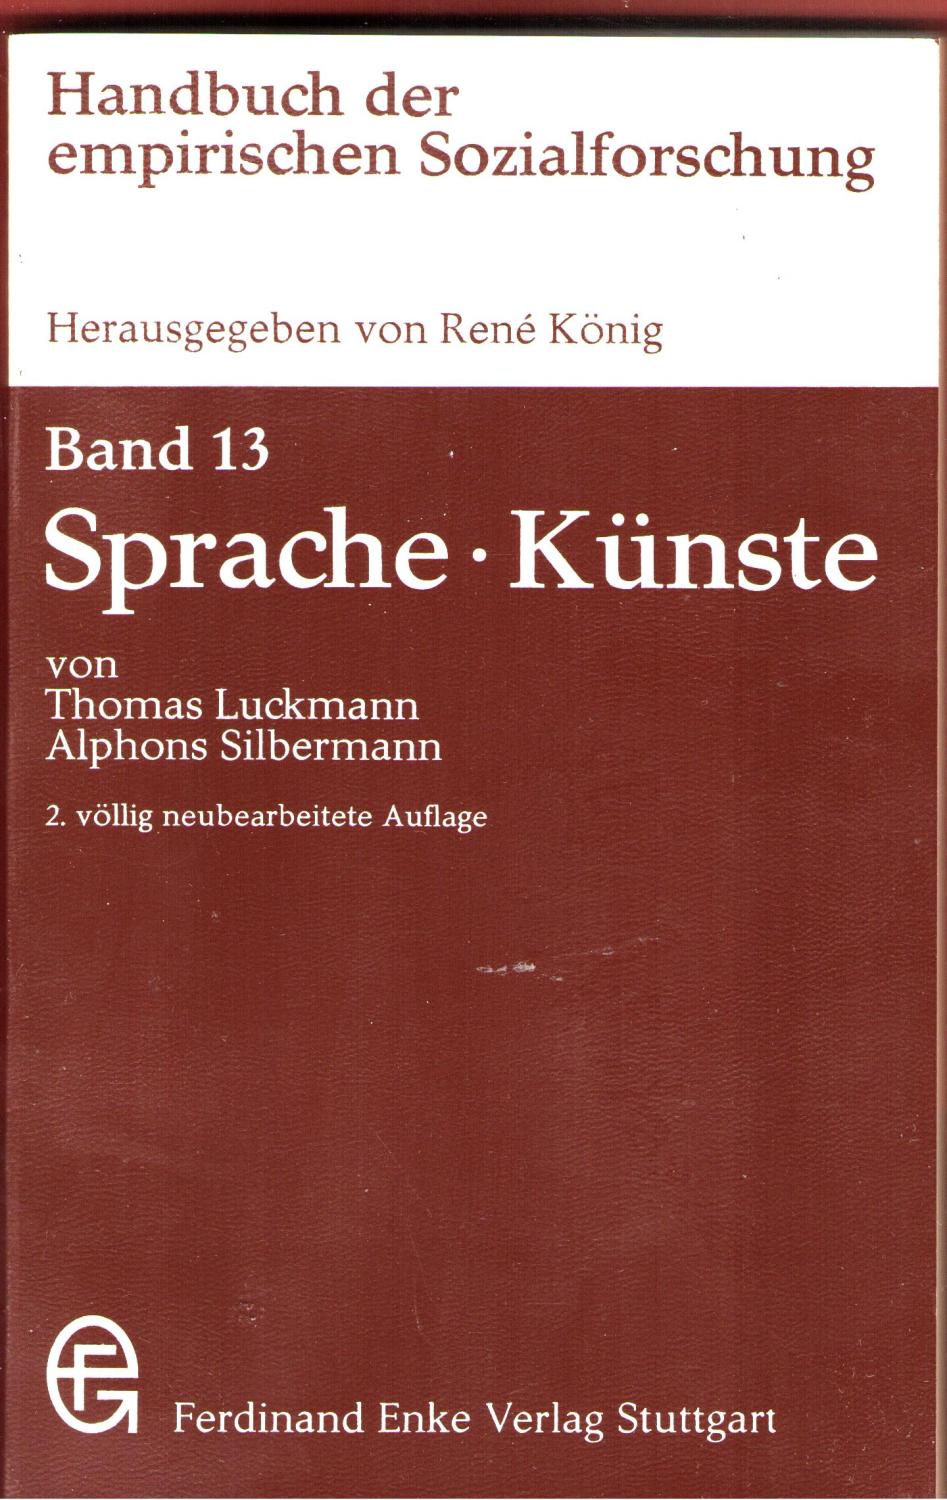 Handbuch der empirischen Sozialforschung (Sprache, Künste, Band 13)